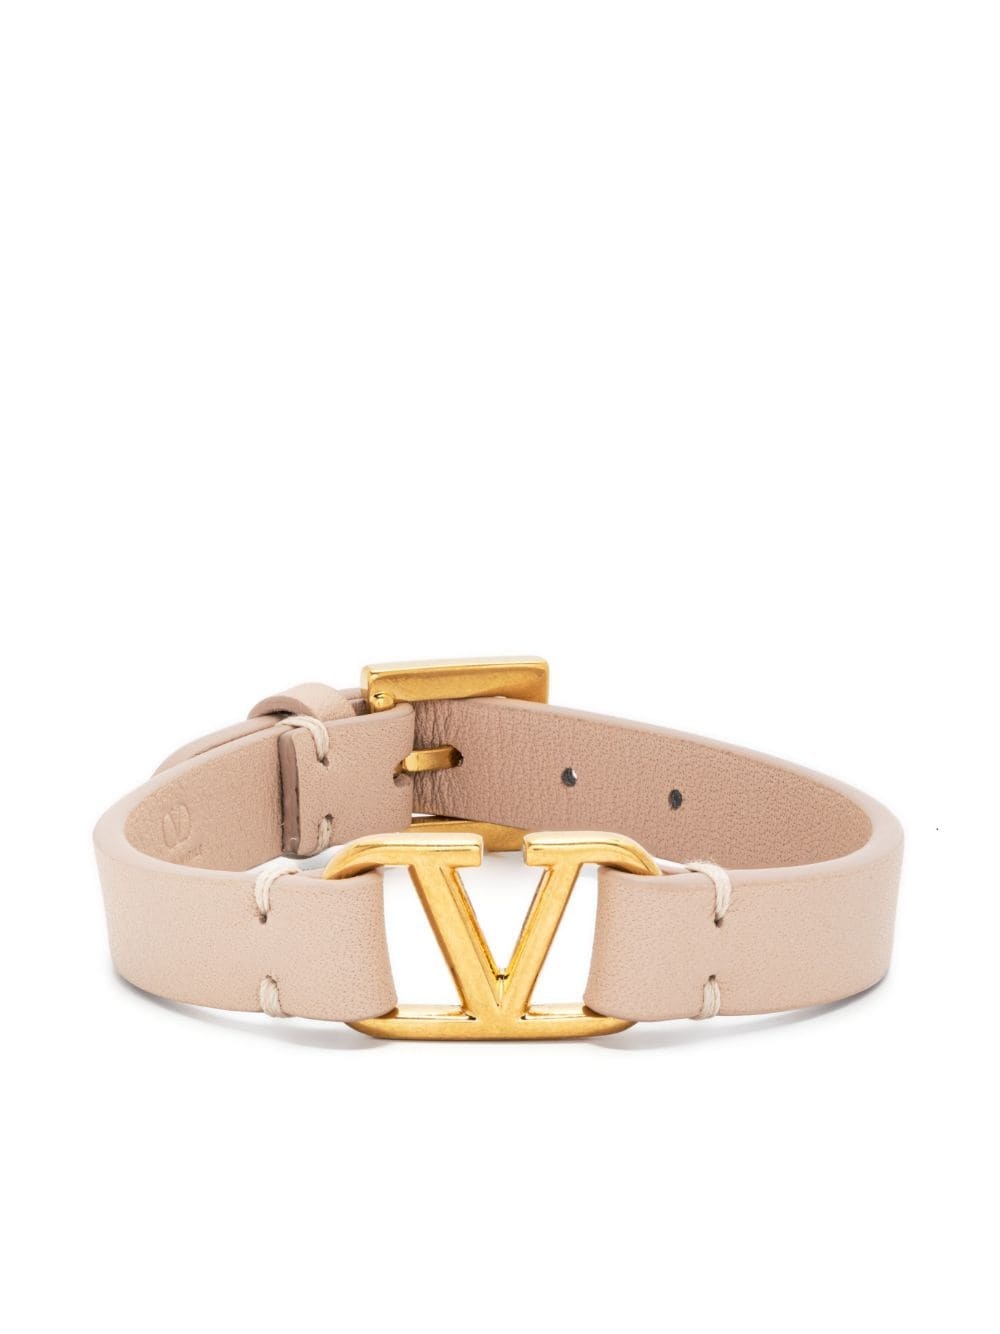 VLogo Signature leather bracelet - 1